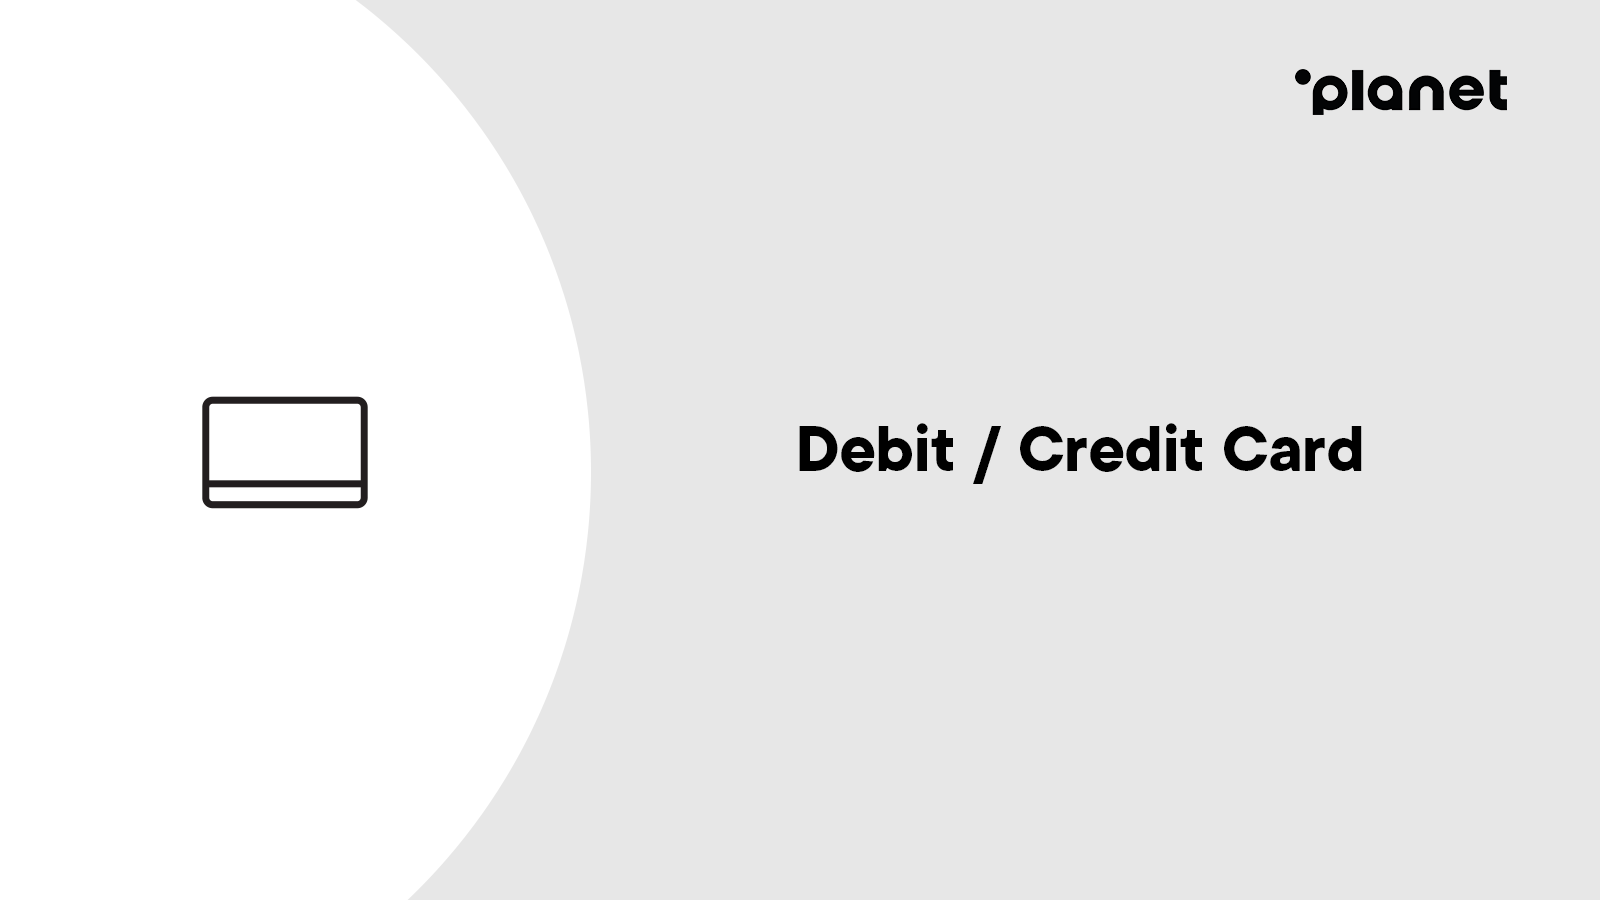 Omnichannel betalningsbehandling med betalkort / kreditkort med Planet